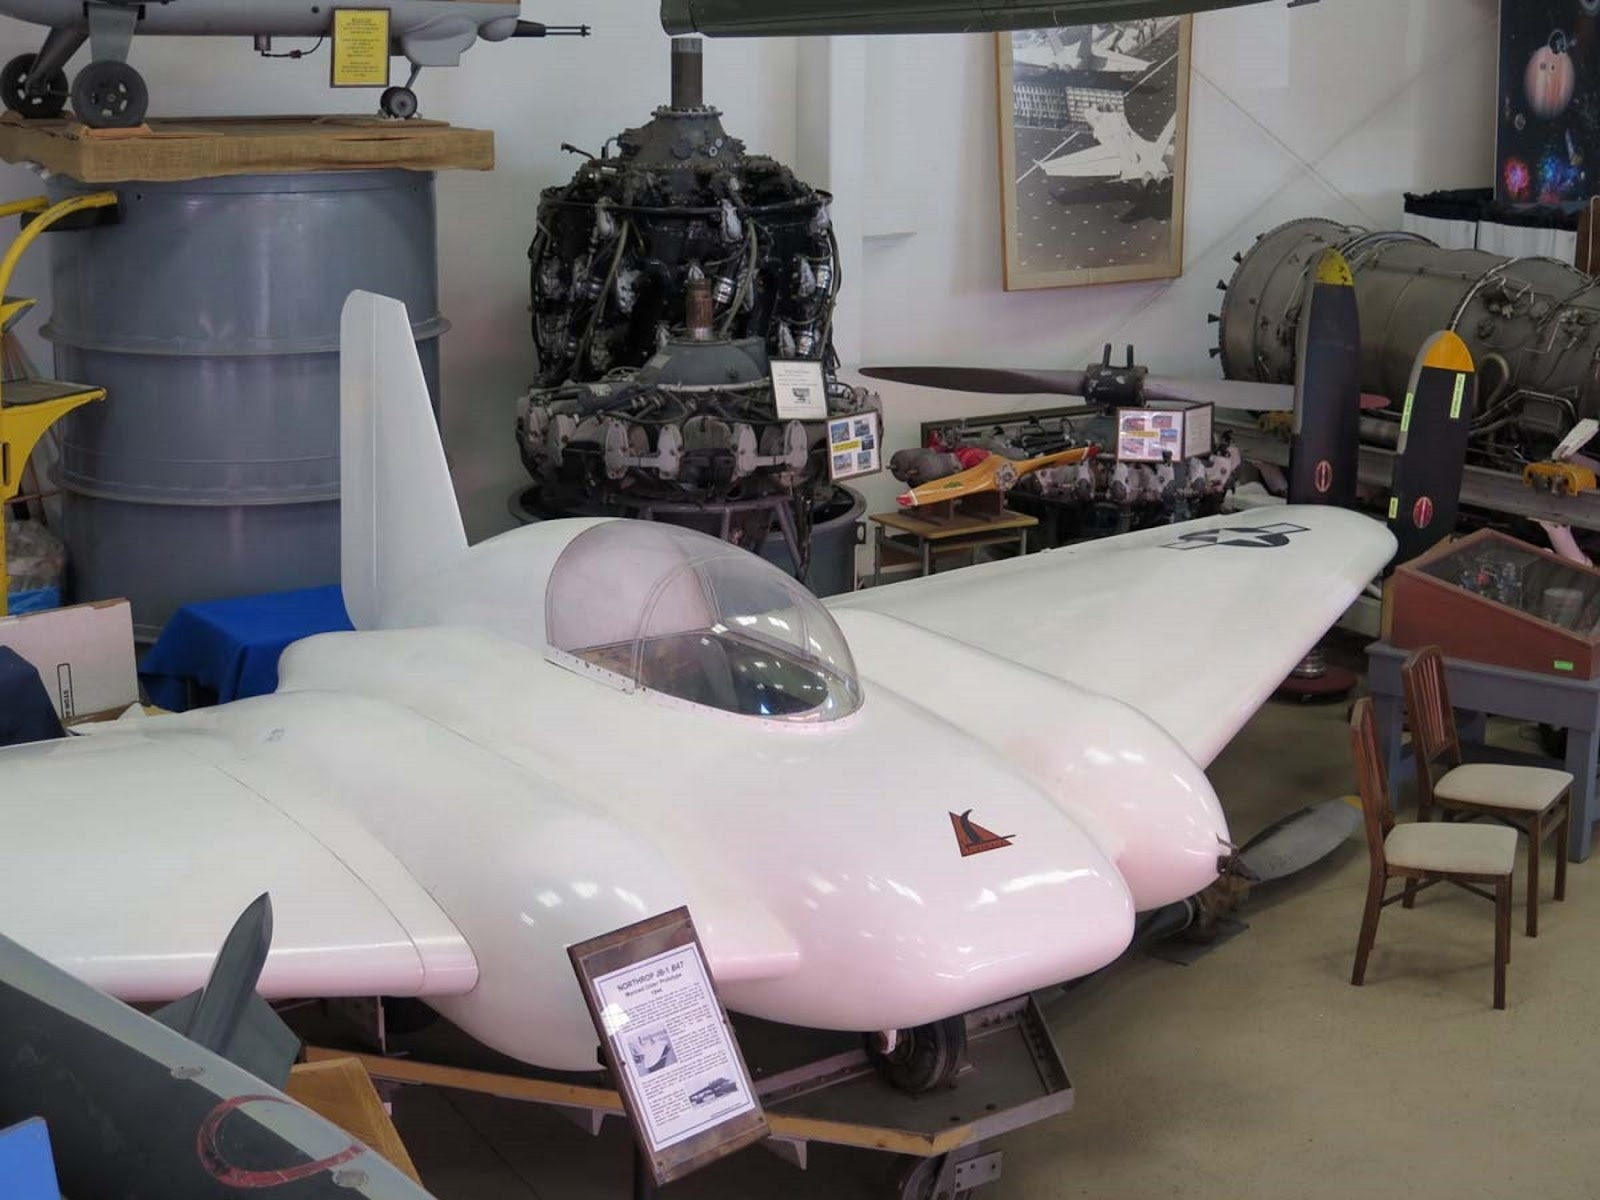 Планёр-прототип JB-1 сохранился до сих пор и экспонируется в Западной музее авиации (https://www.wmof.com/), что в аэропорту Зэмперини-филд, Калифорния. Треугольник с птицей на "капоте" -- эмблема фирмы "Нортроп"